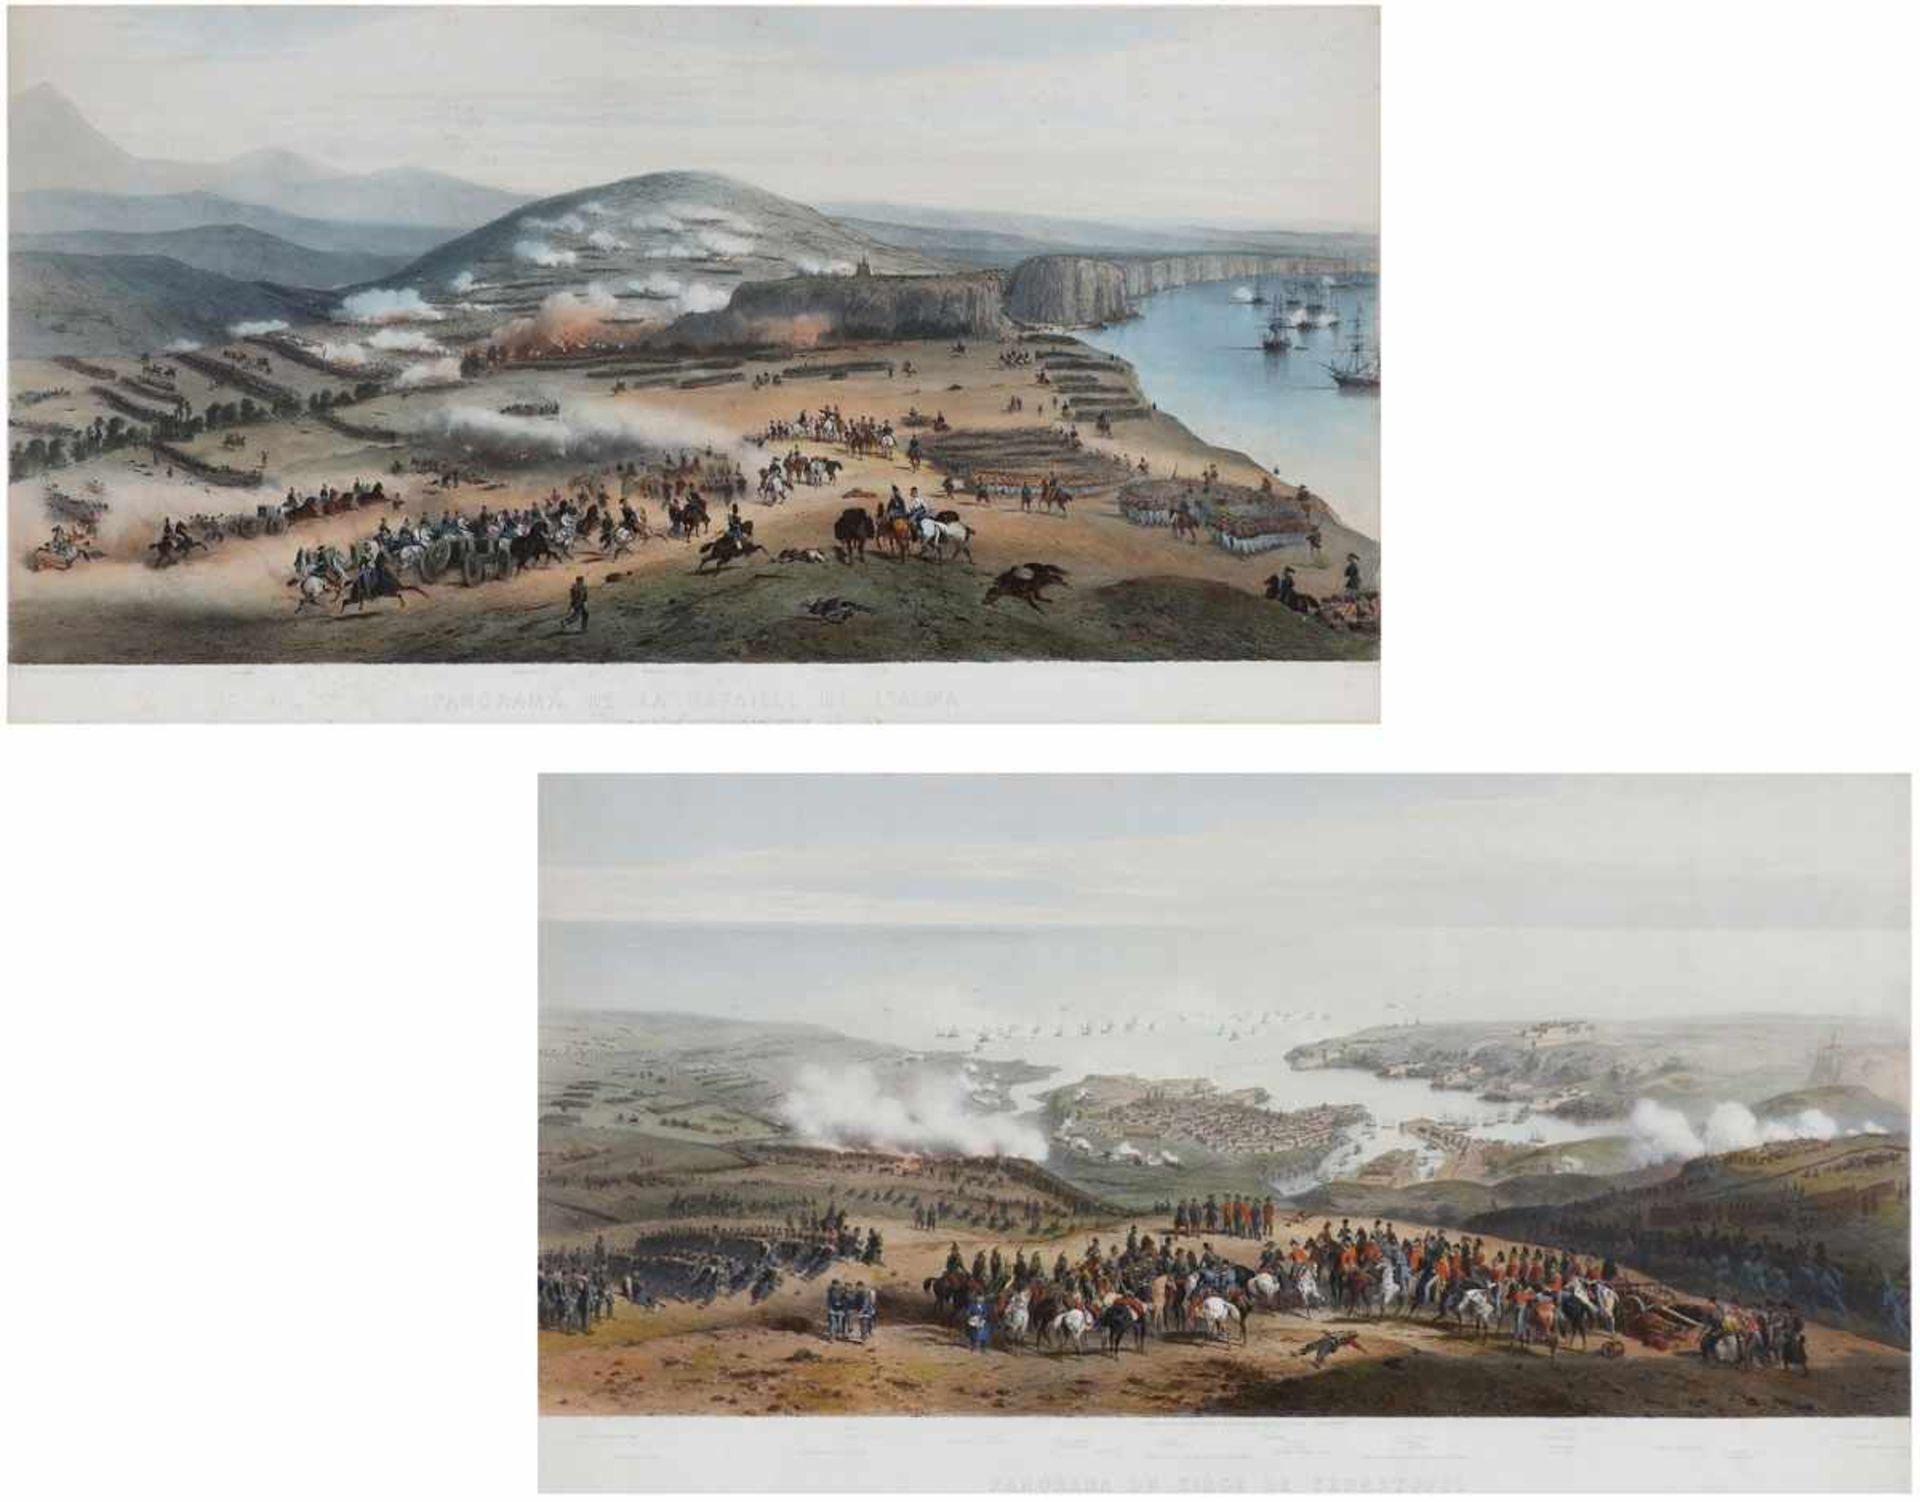 Lithografen des 19. Jahrhunderts- "Panorama du Siège de Sébastopol" - - "Panorama de la Bataille